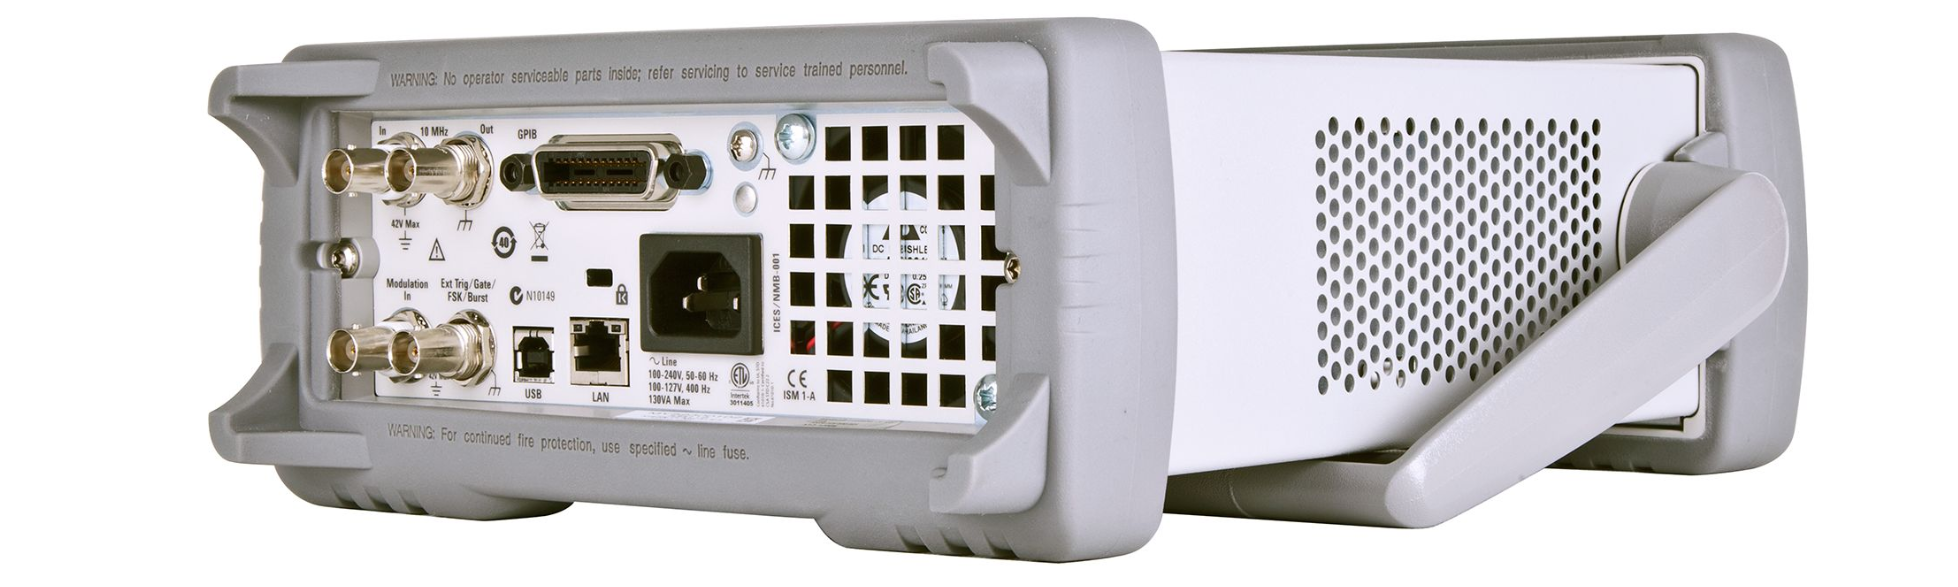 Генераторы сигналов Keysight серии 33500B с возможностью генерации сигналов произвольной формы